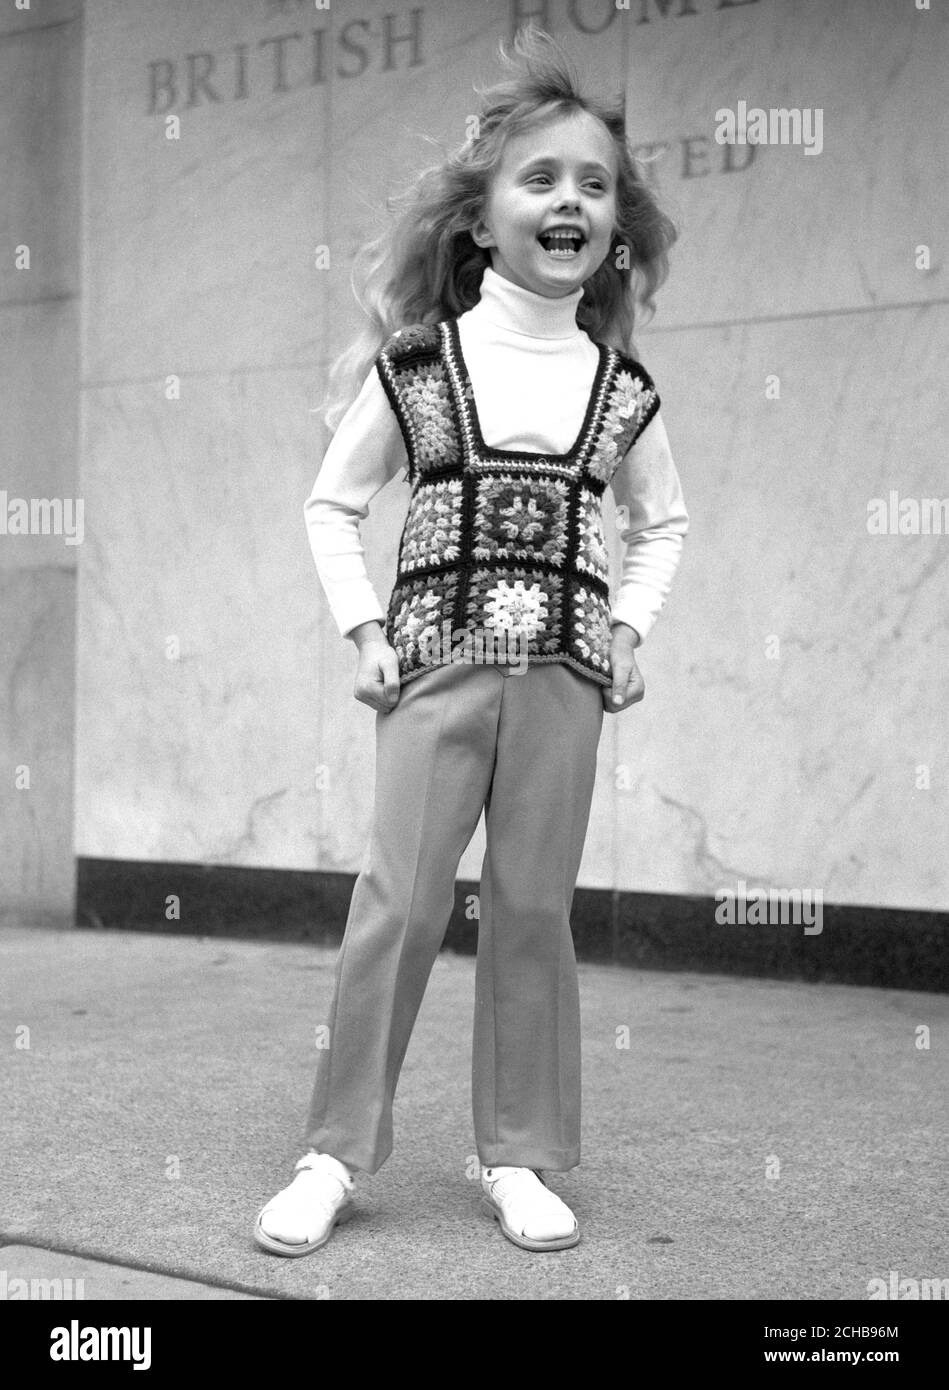 Le modèle Samanta Gates, 6 ans, porte un modèle en crochet de la gamme printemps-été de vêtements pour enfants dans les Home Stores britanniques. Banque D'Images